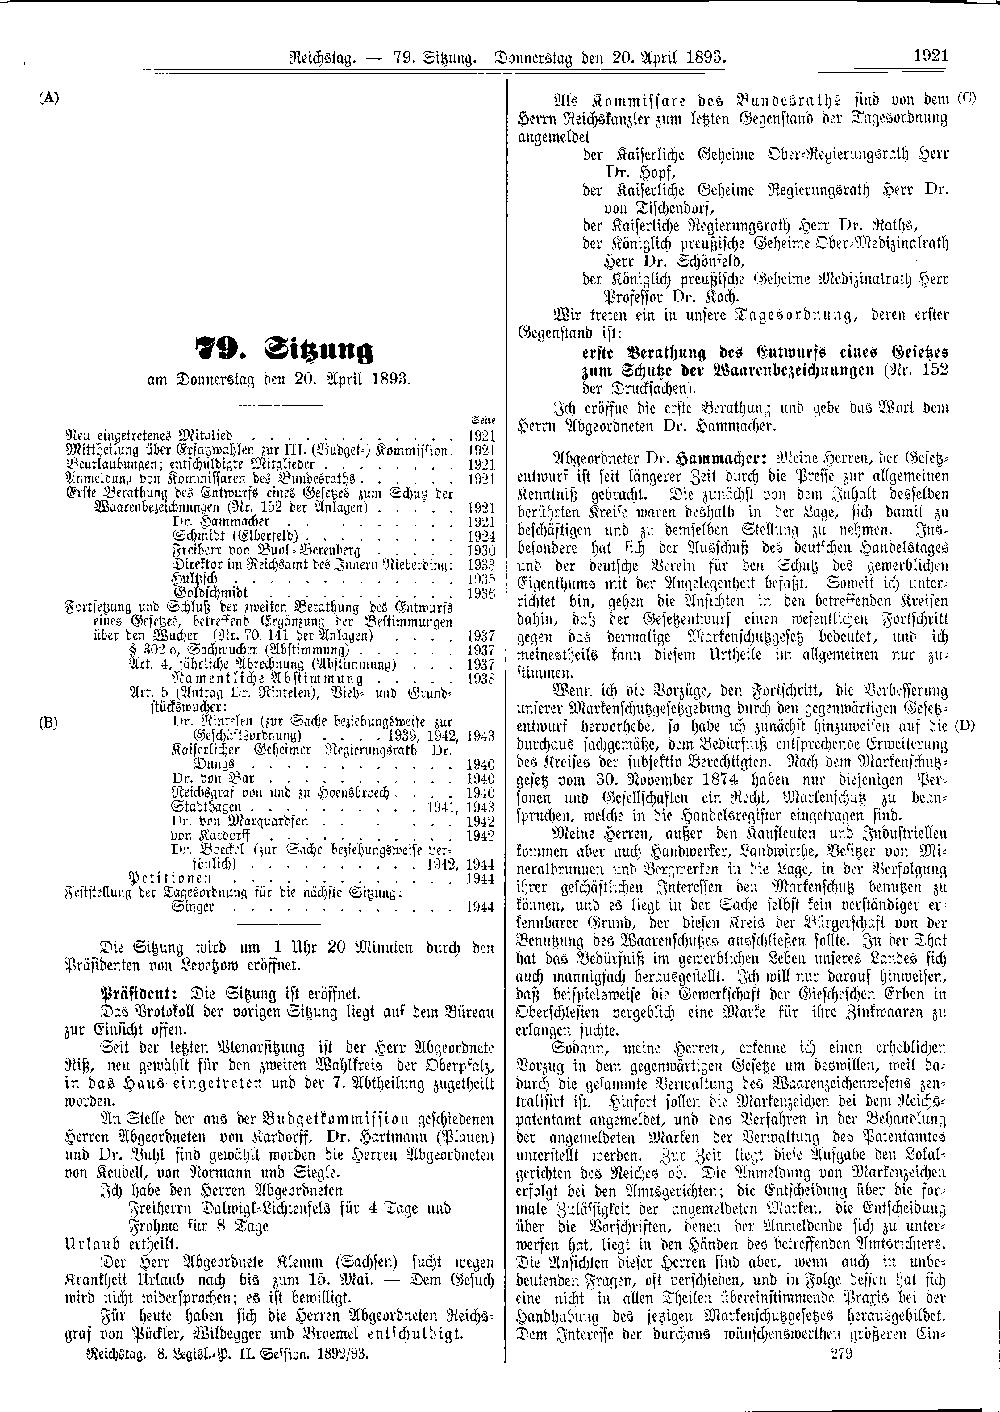 Scan der Seite 1921